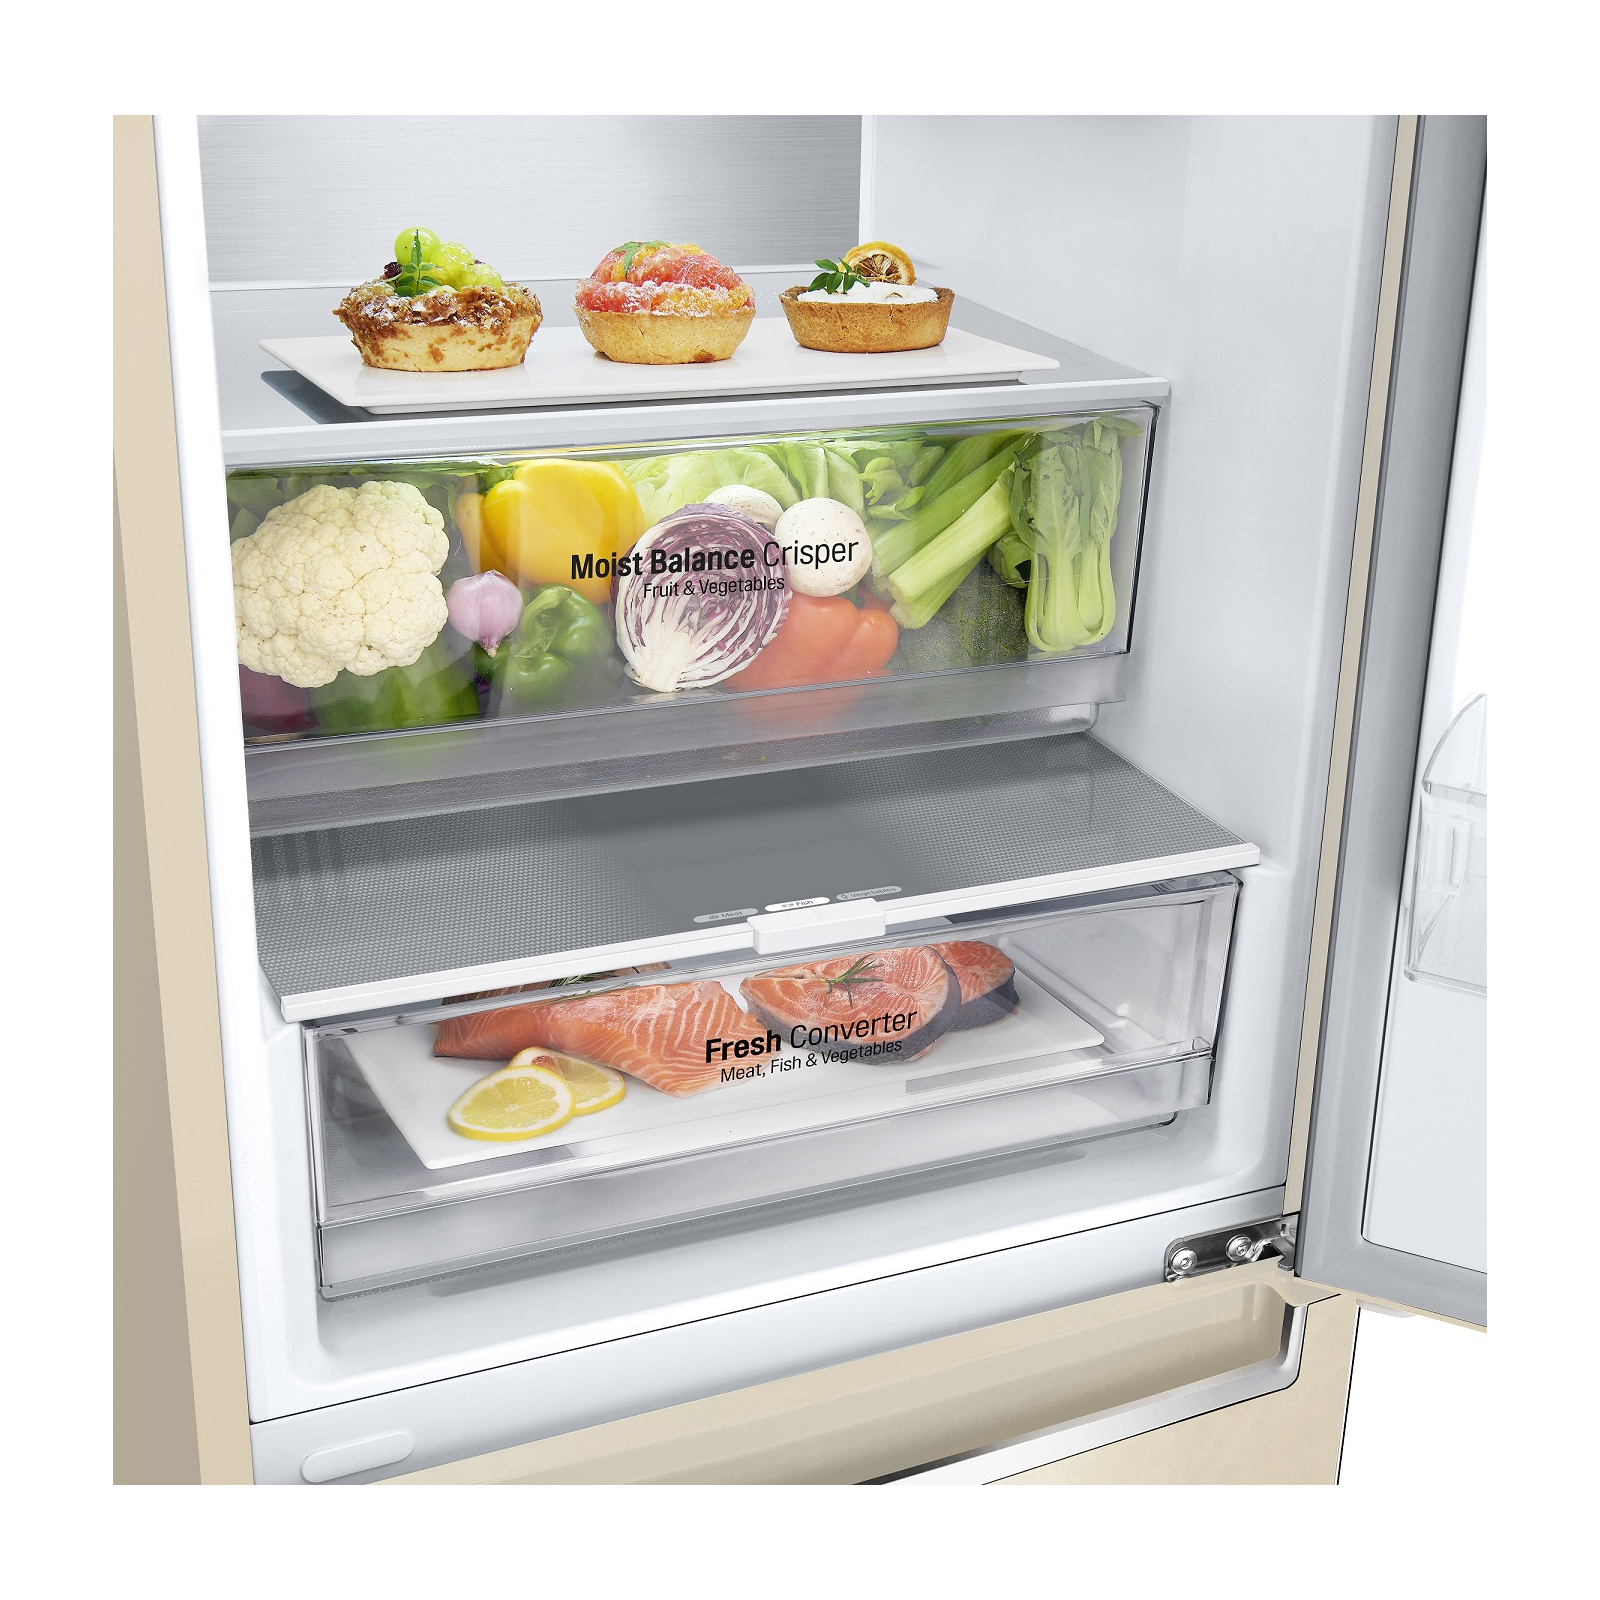 Холодильник LG GW-B509SENM изображение 7